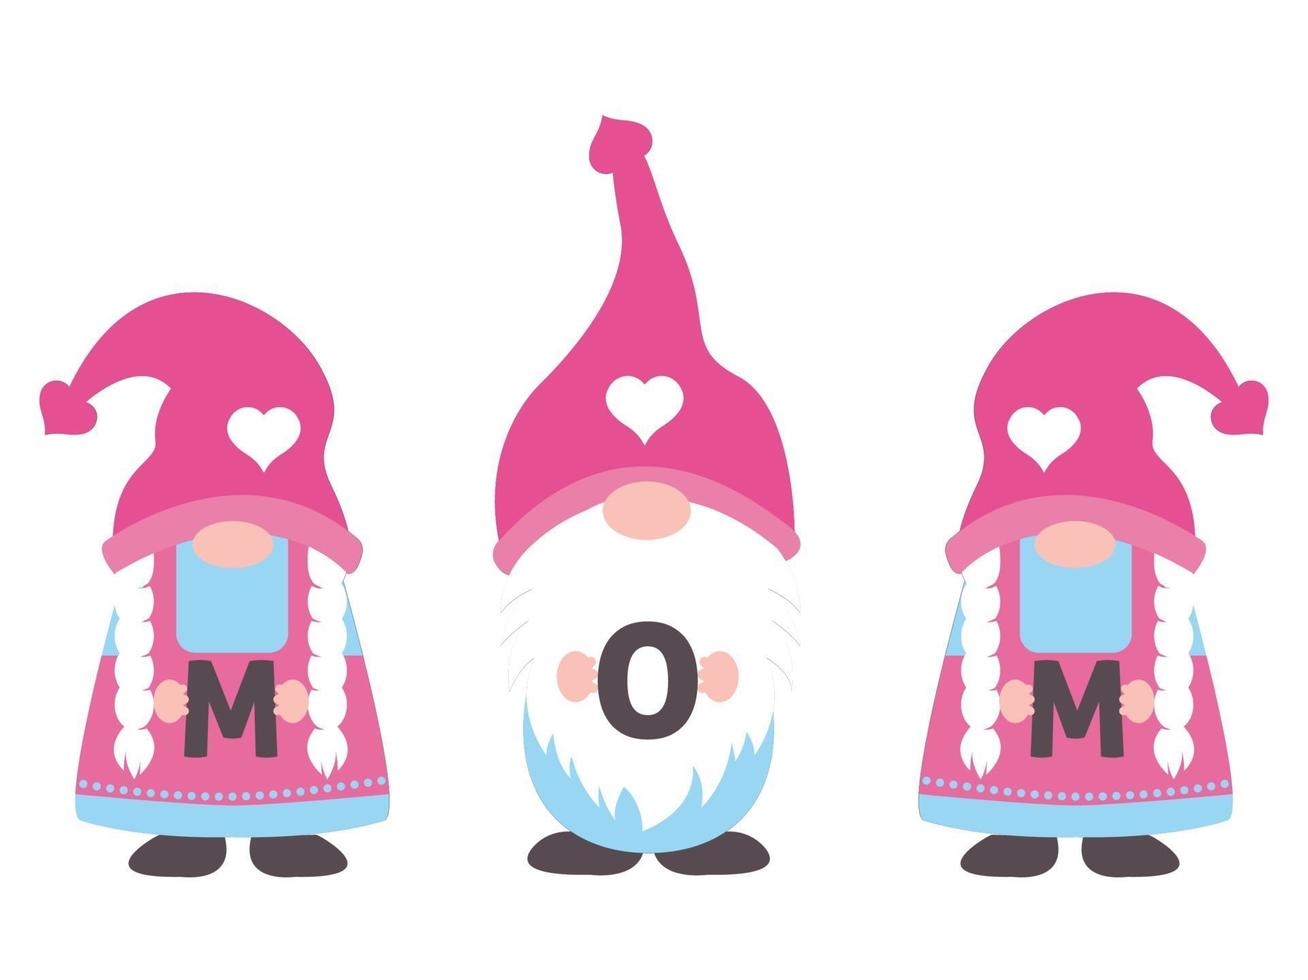 tre gnomi che tengono la parola della mamma sull'illustratore di vettore di giorno di madri.